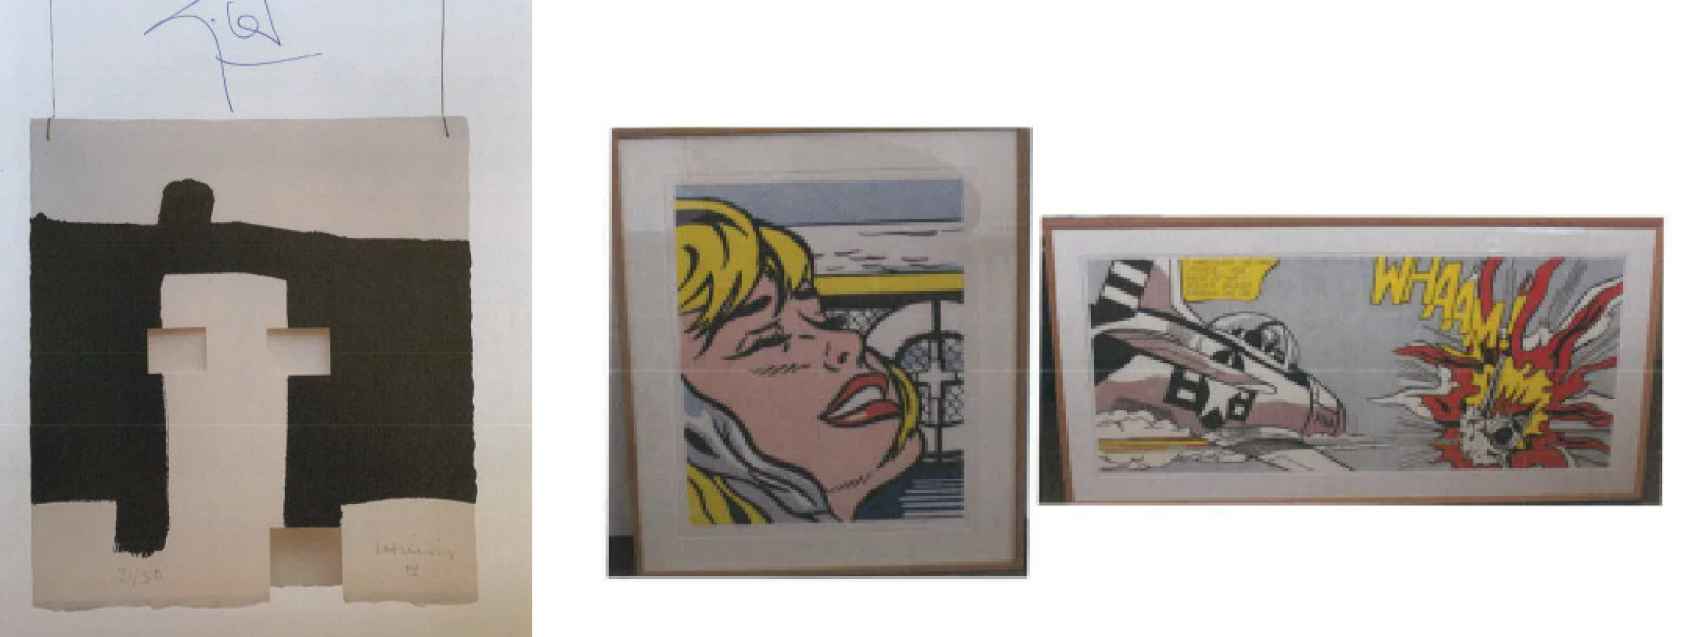 Tres de las 15 obras qur fueron vendidas: una de Chillida y dos de Roy Lichtenstein.